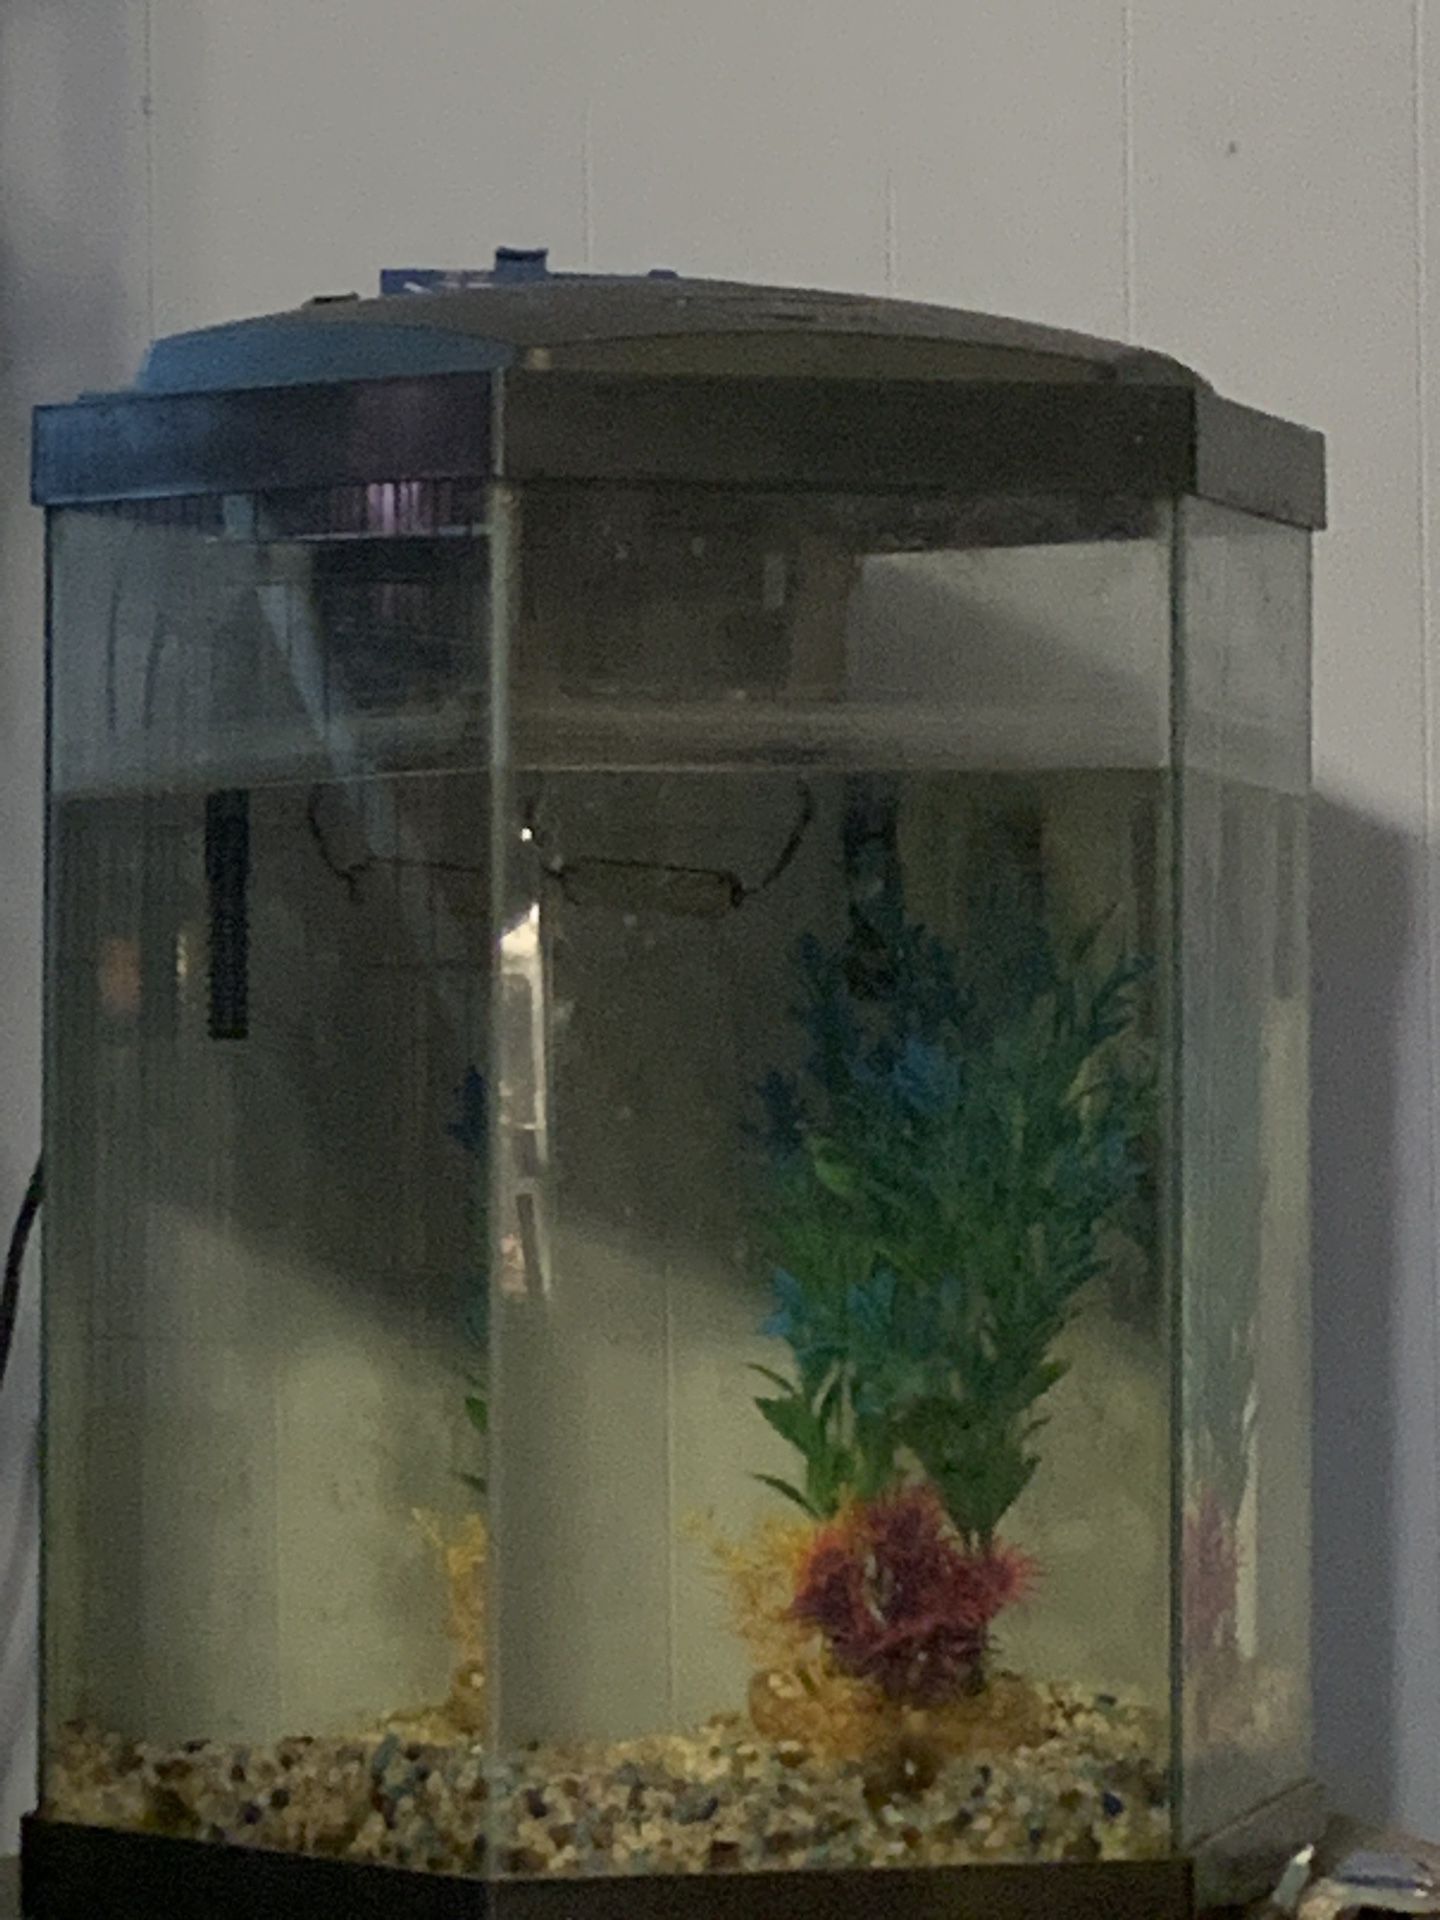 30 Gallon Aquarium